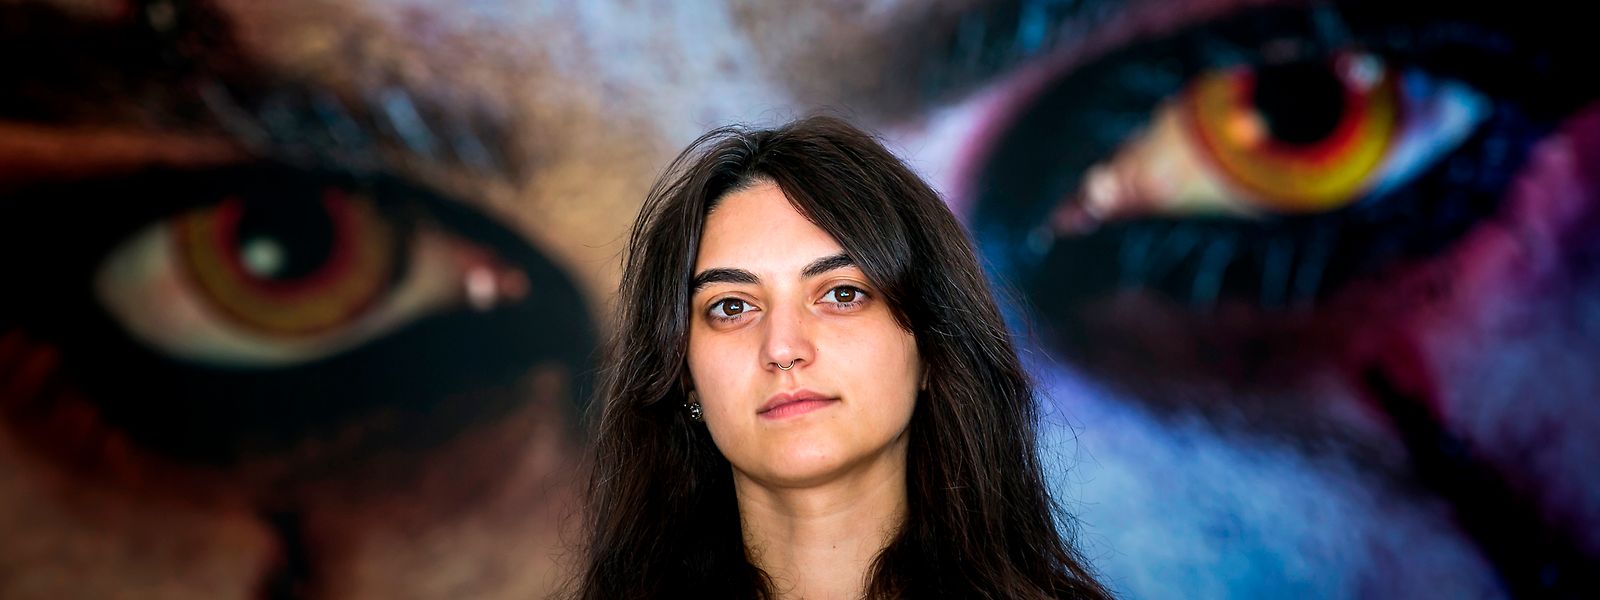 Sara Lopo, nascida e criada no Luxemburgo, é a responsável pelo Motelx, o maior festival internacional de cinema de terror em Portugal.



